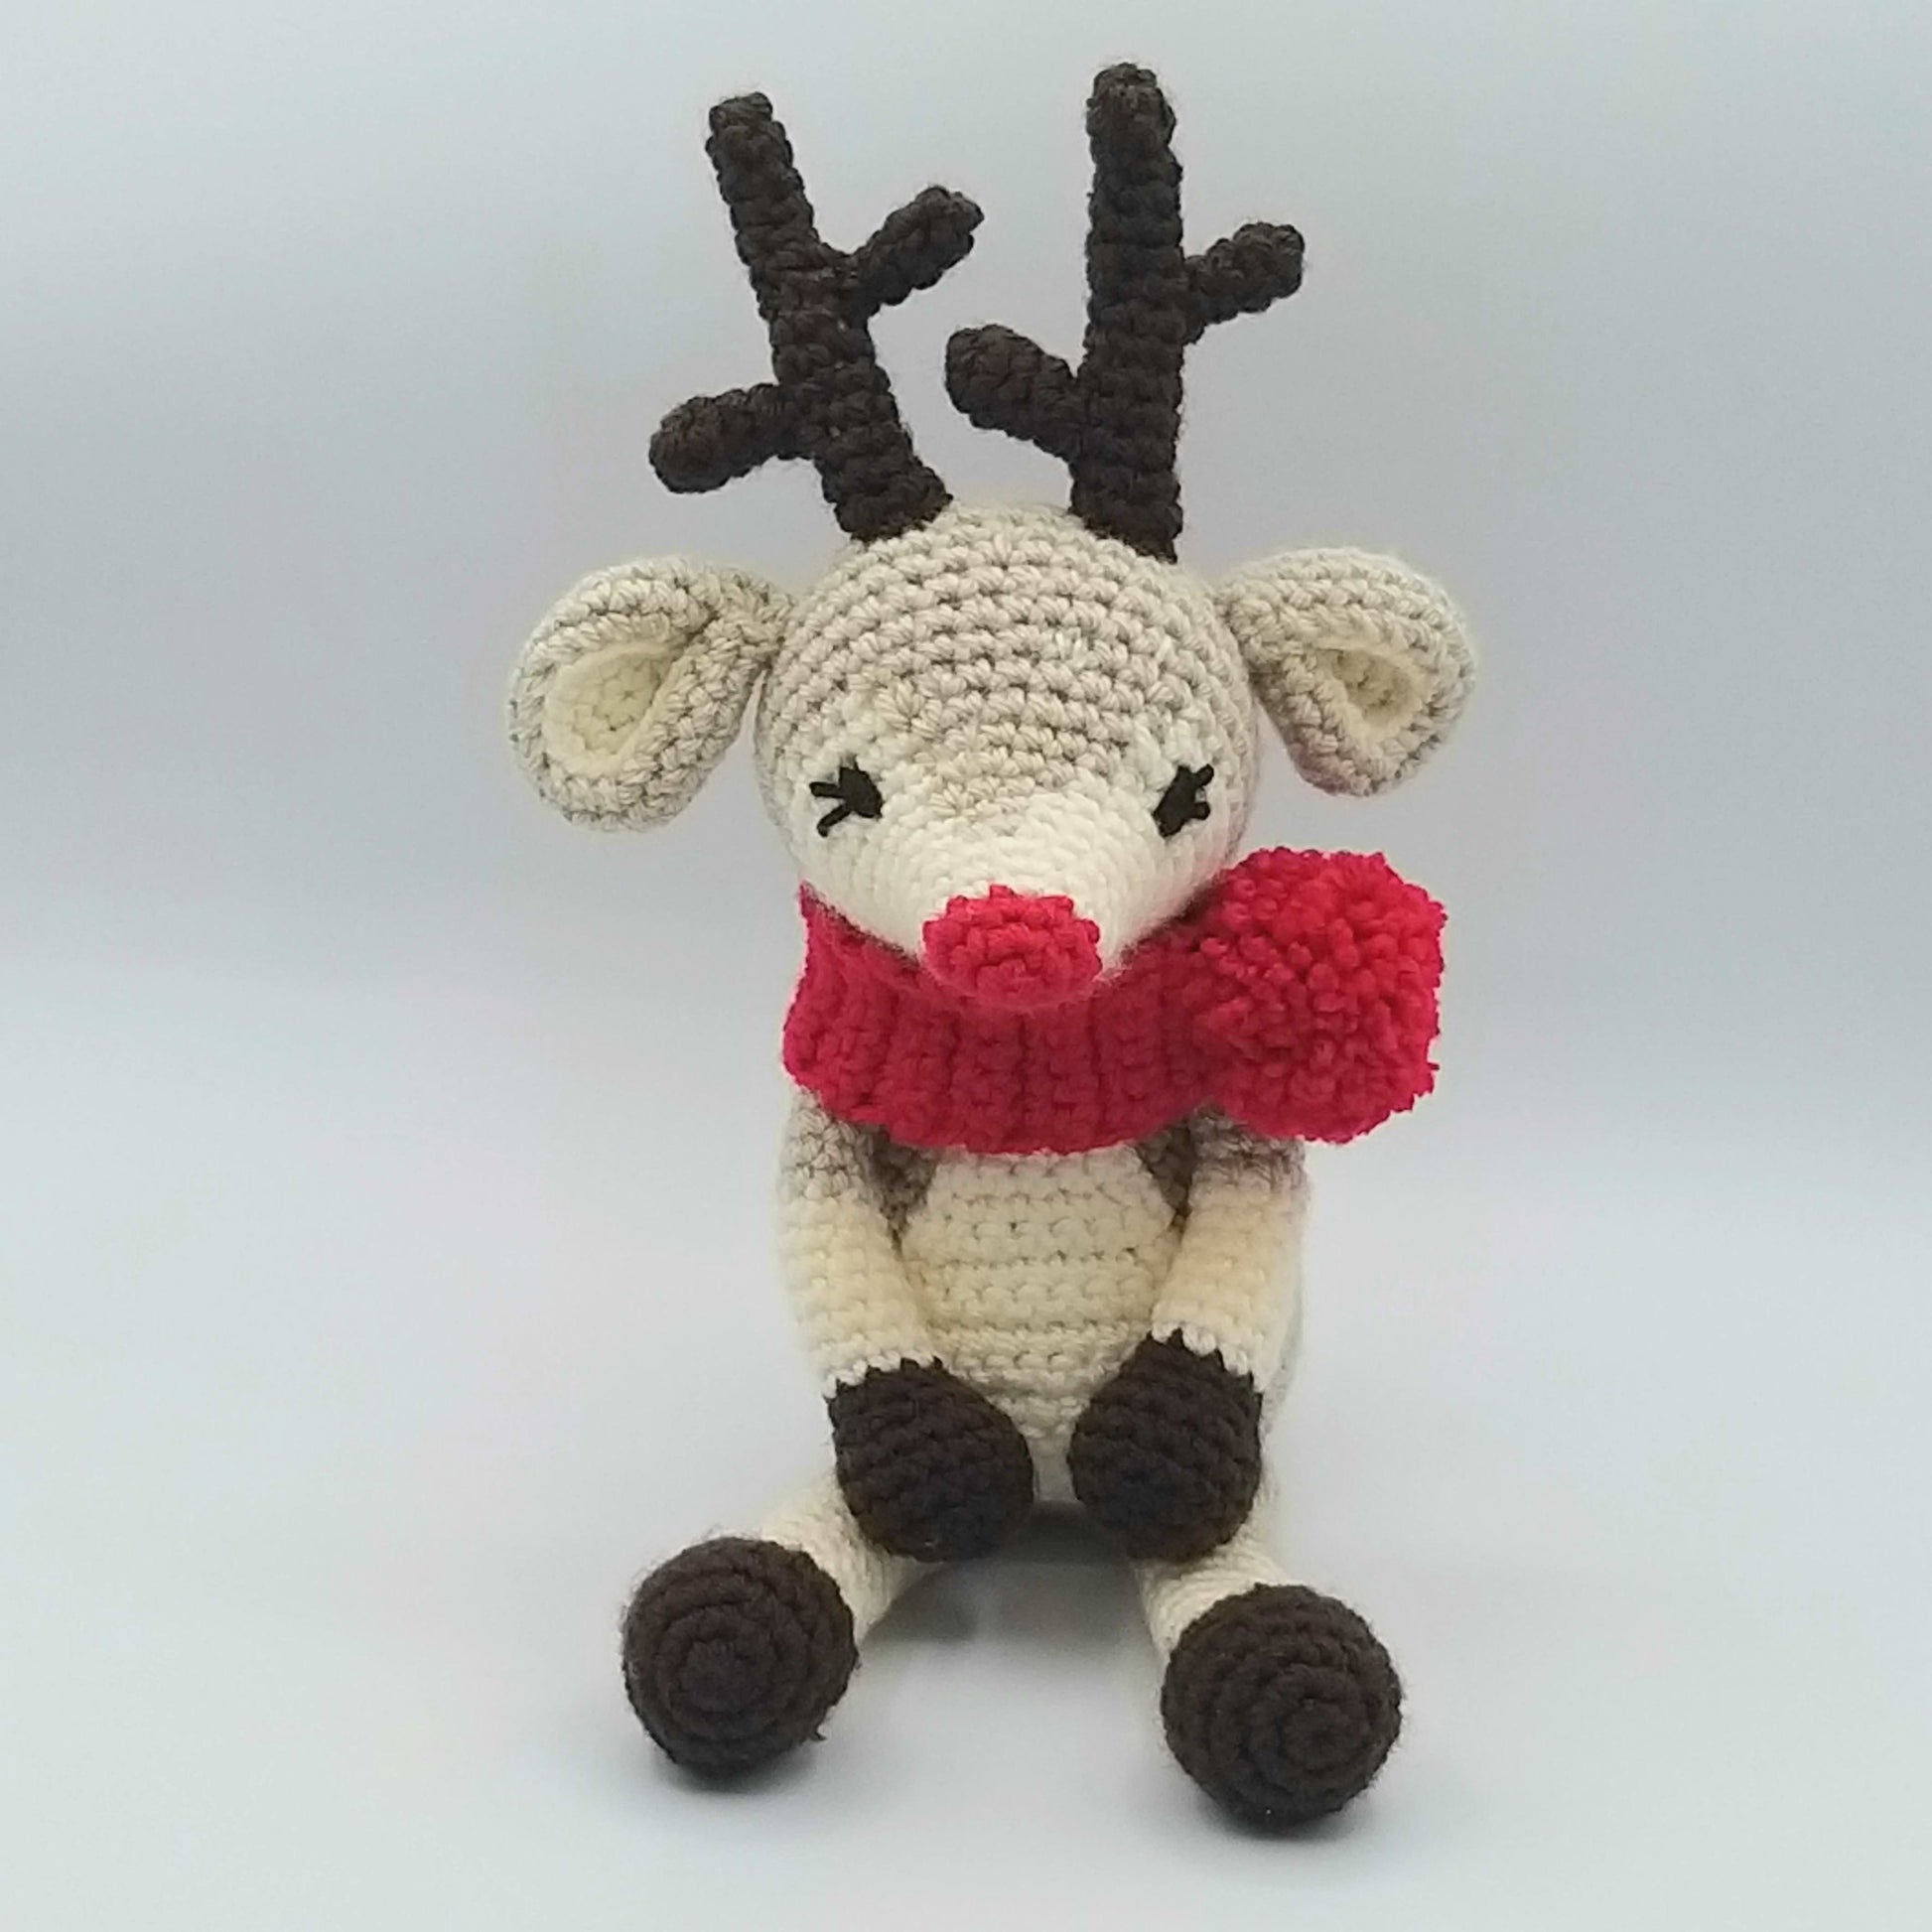 Father Christmas Crochet Kit